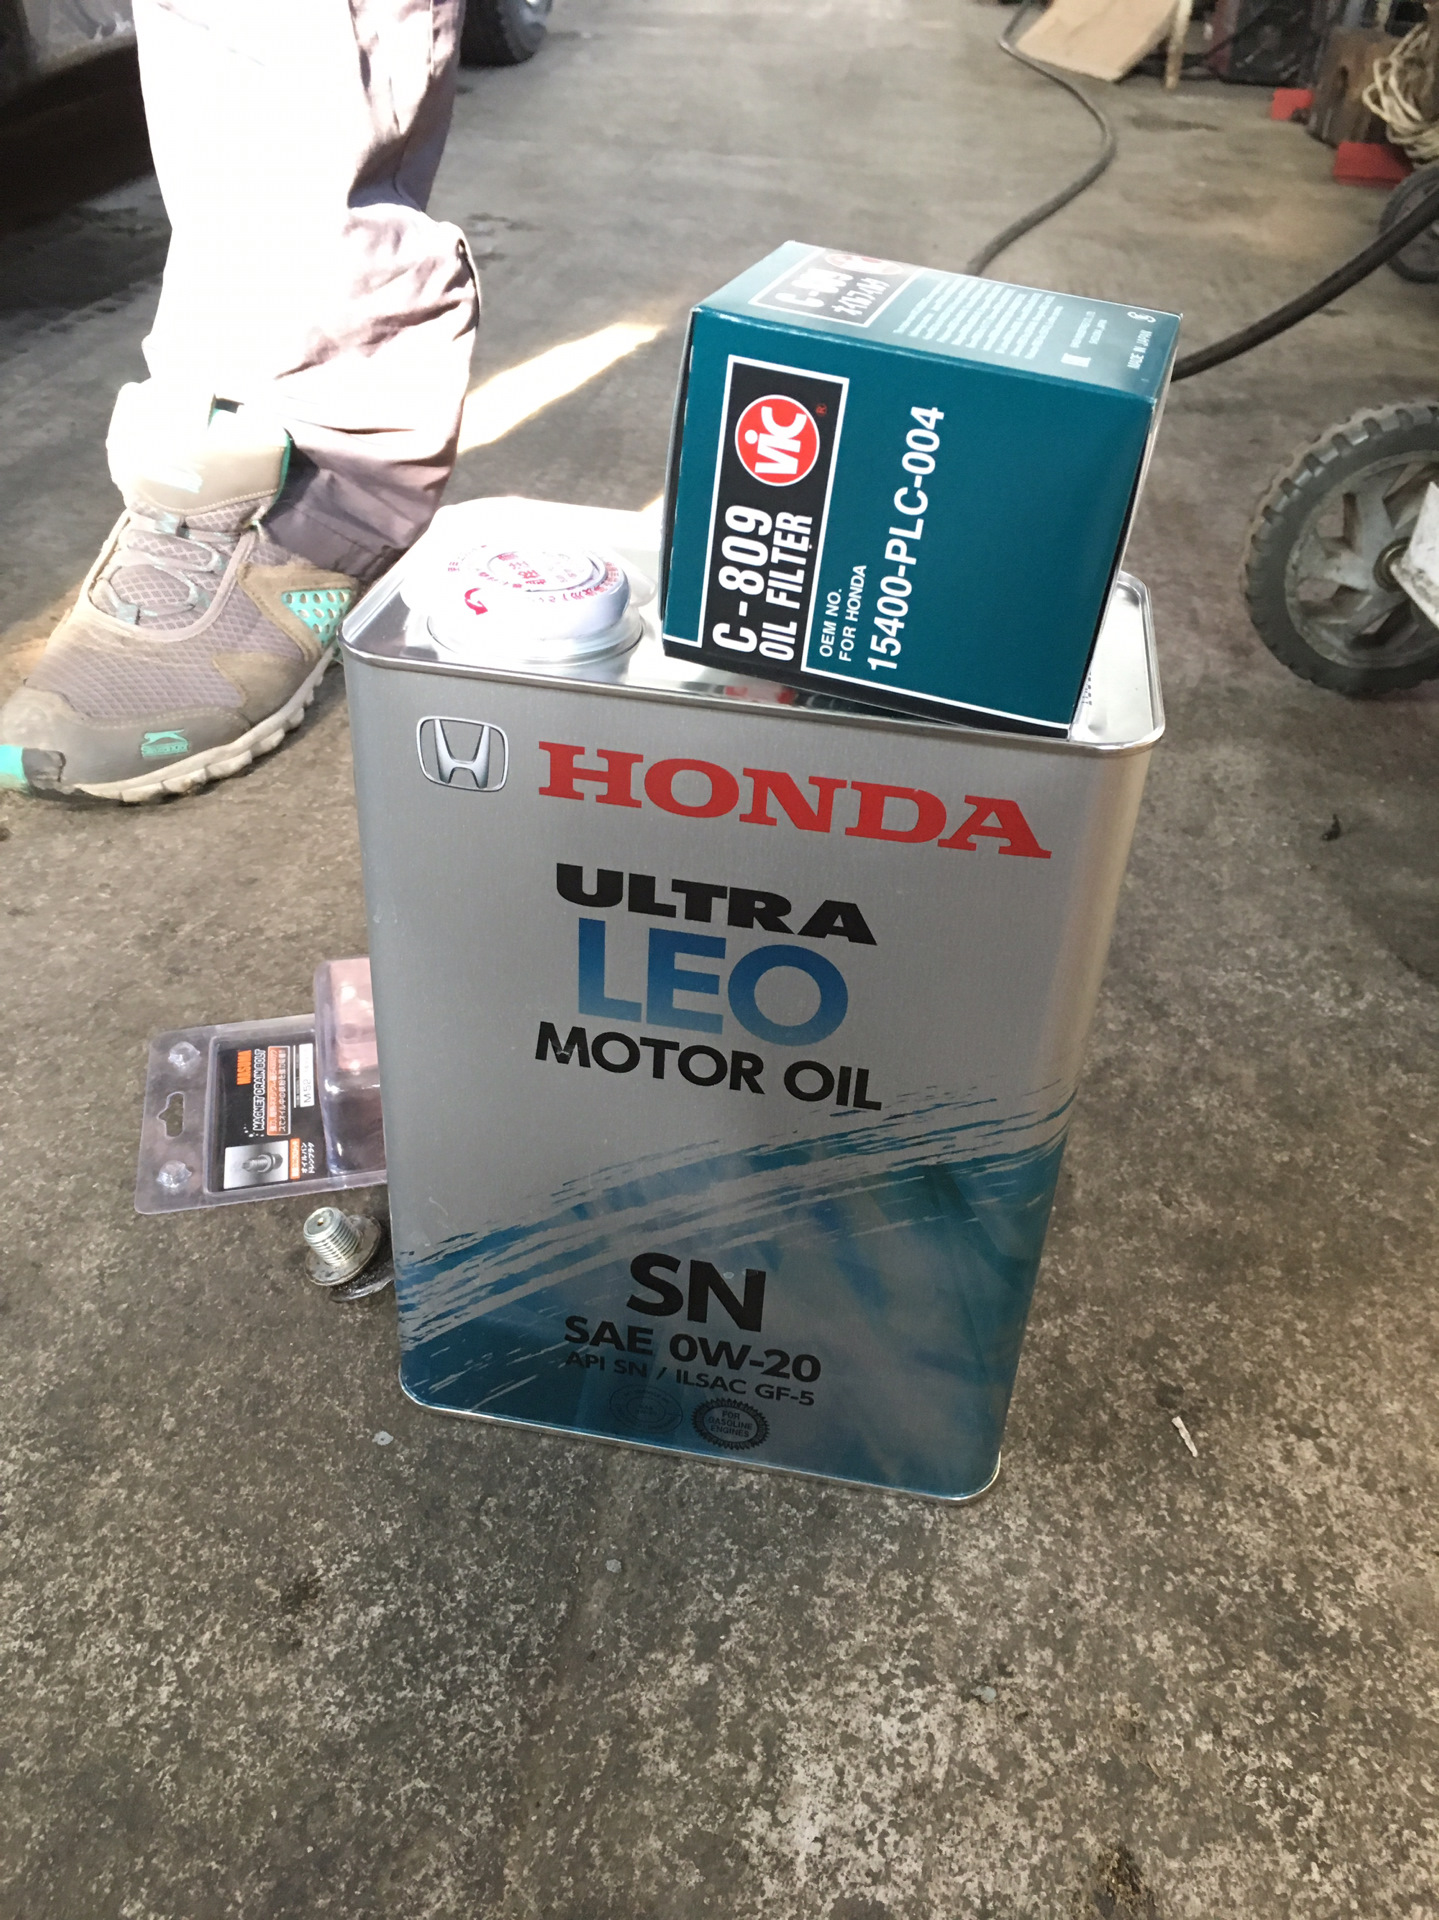 Honda fit какое масло. Хонда фит гибрид 2015 год фильтр масляный артикул. Хонда фит 2002 год масло в вариатор. Масляный фильтр Хонда фит 1.5 гибрид артикул. Масляный фильтр Хонда фит Джи ти 1.